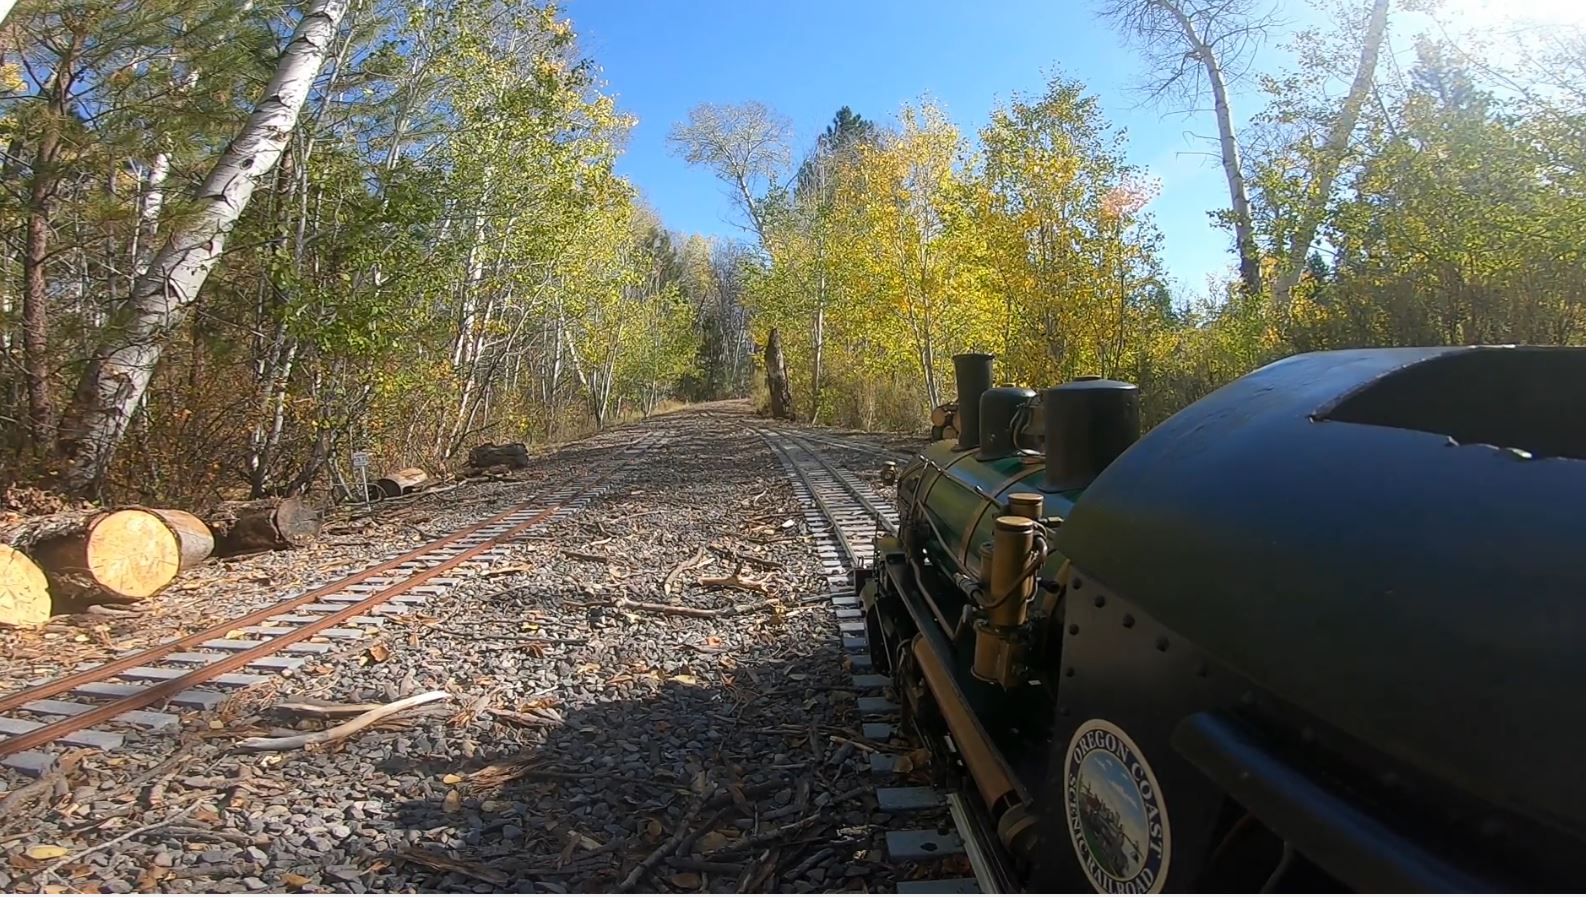 Steam at the Train Mountain Railroad